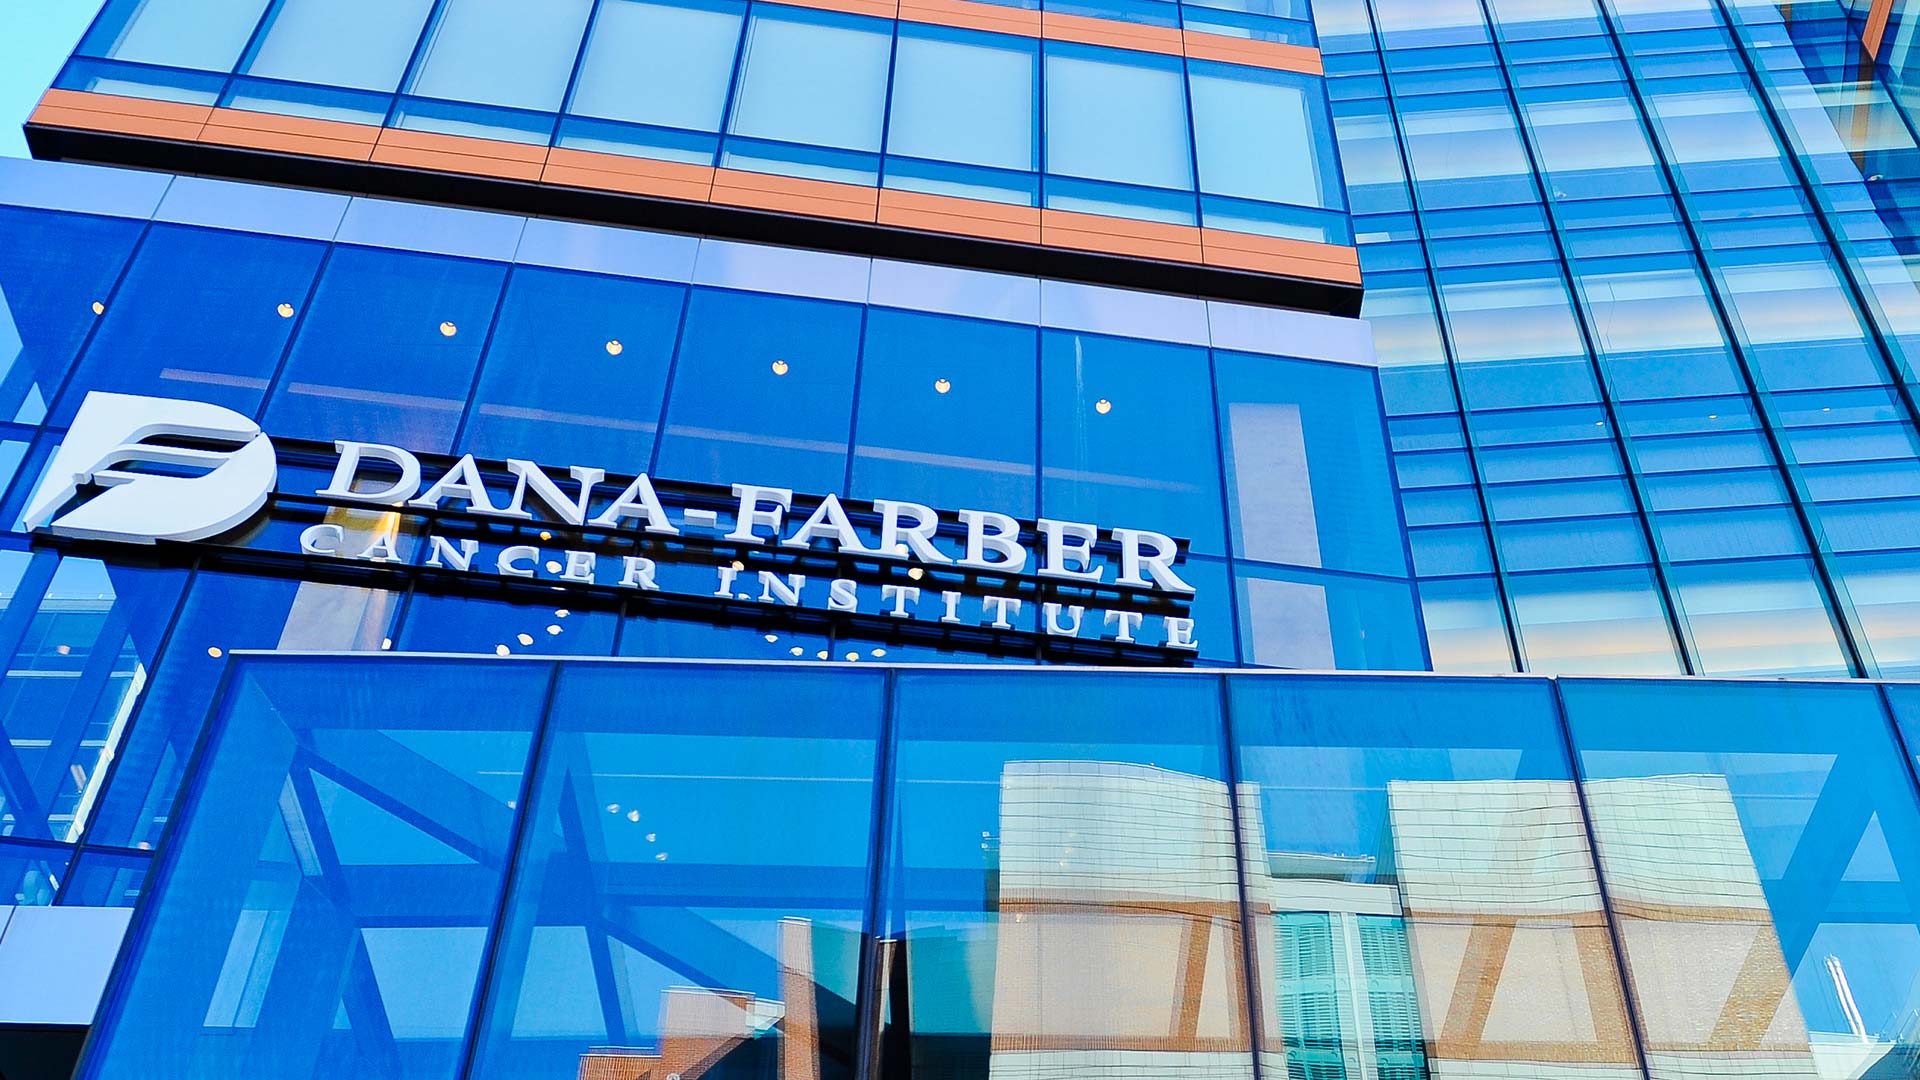 Dana-Farber Cancer Institute 